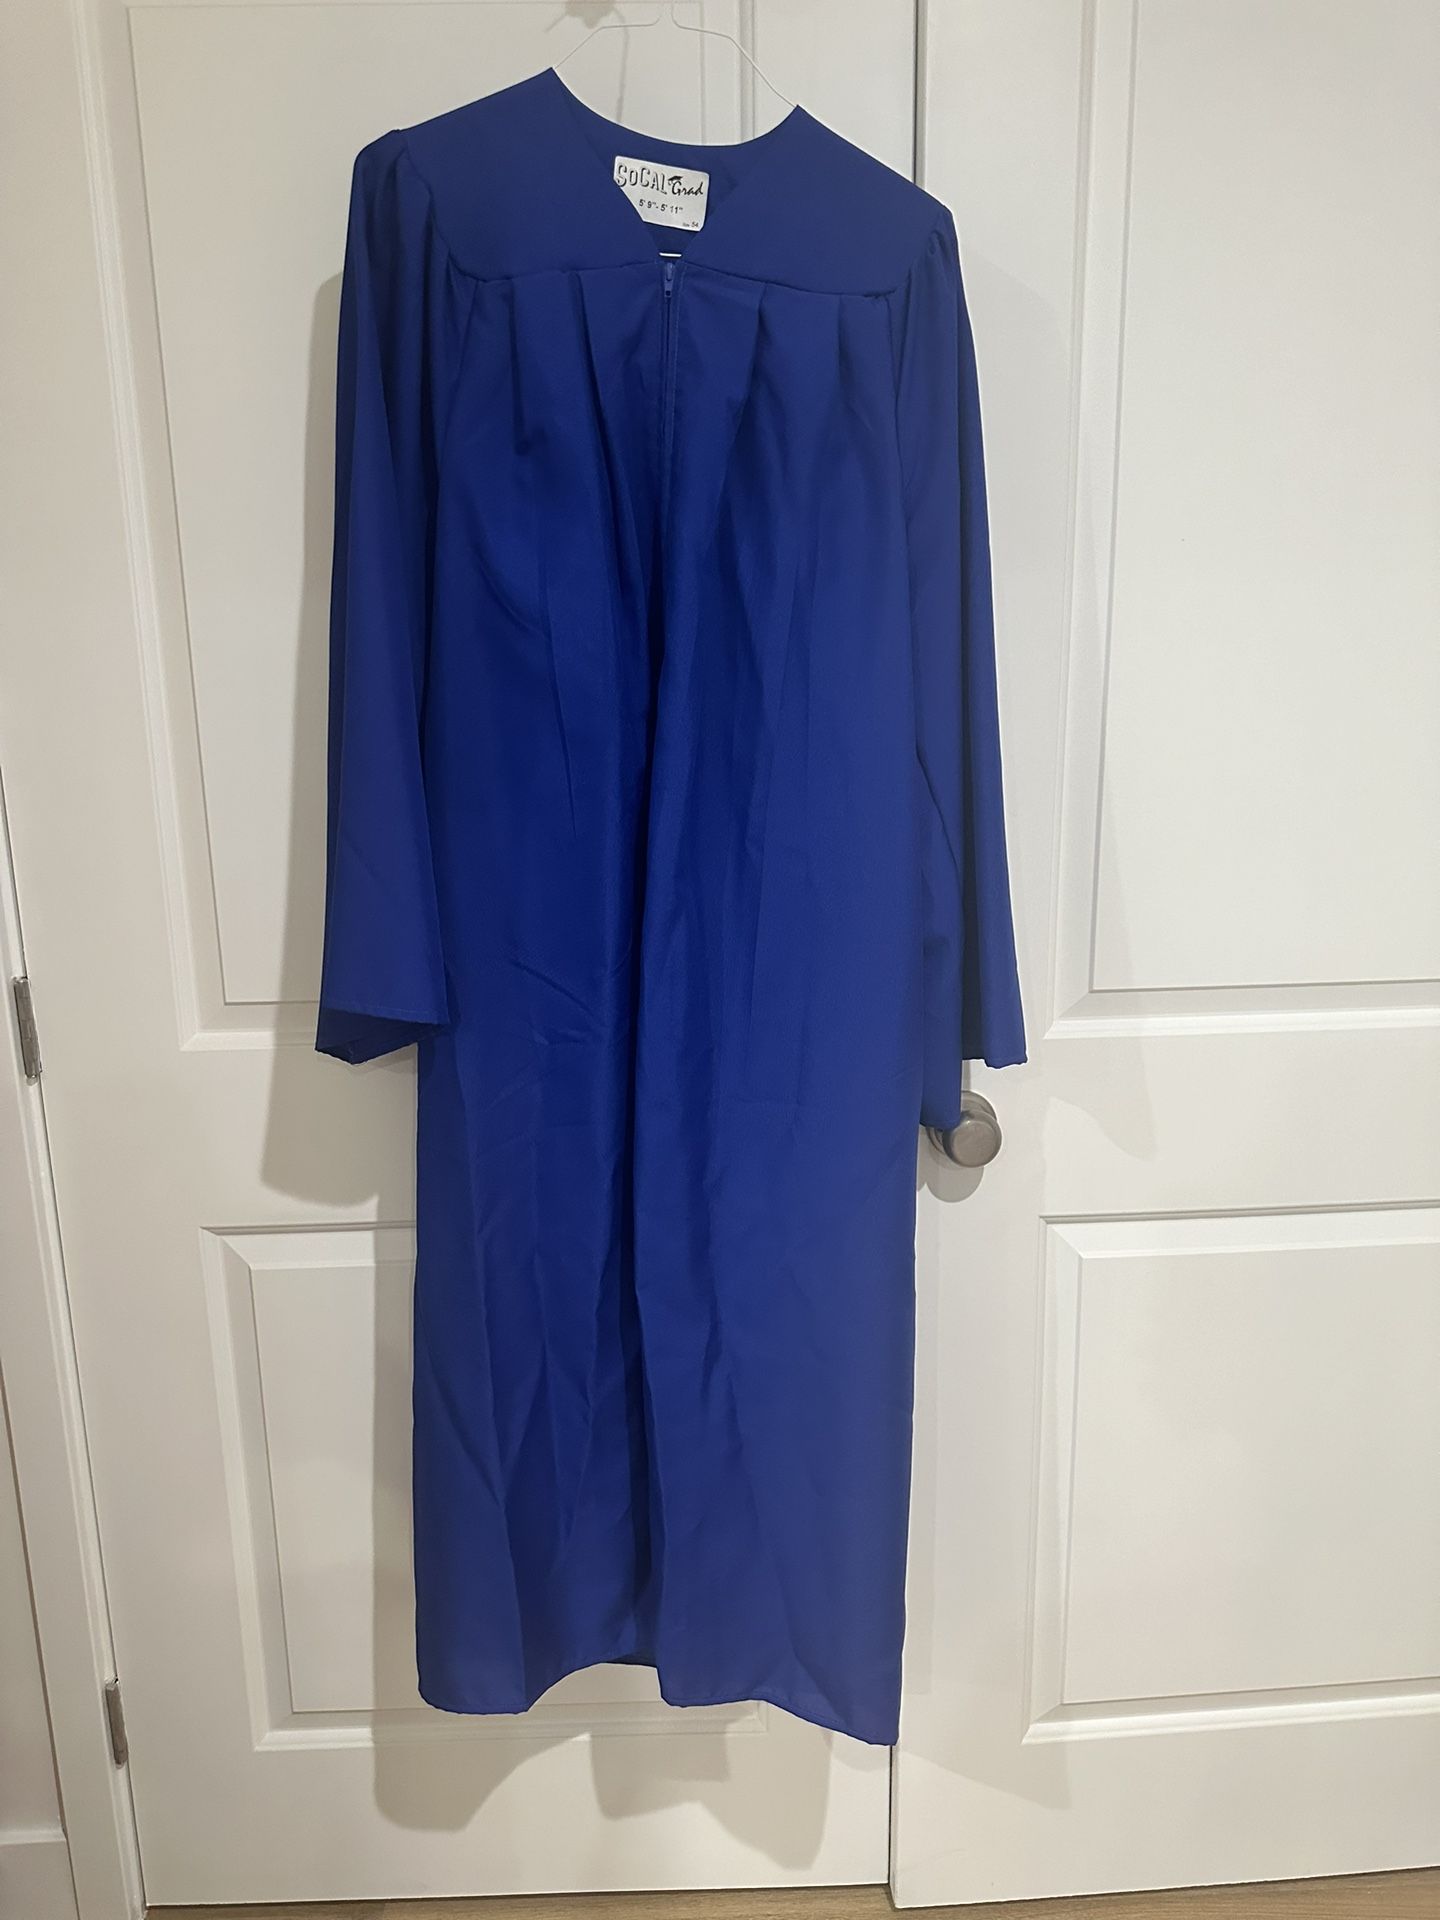 Blue Graduation Gown